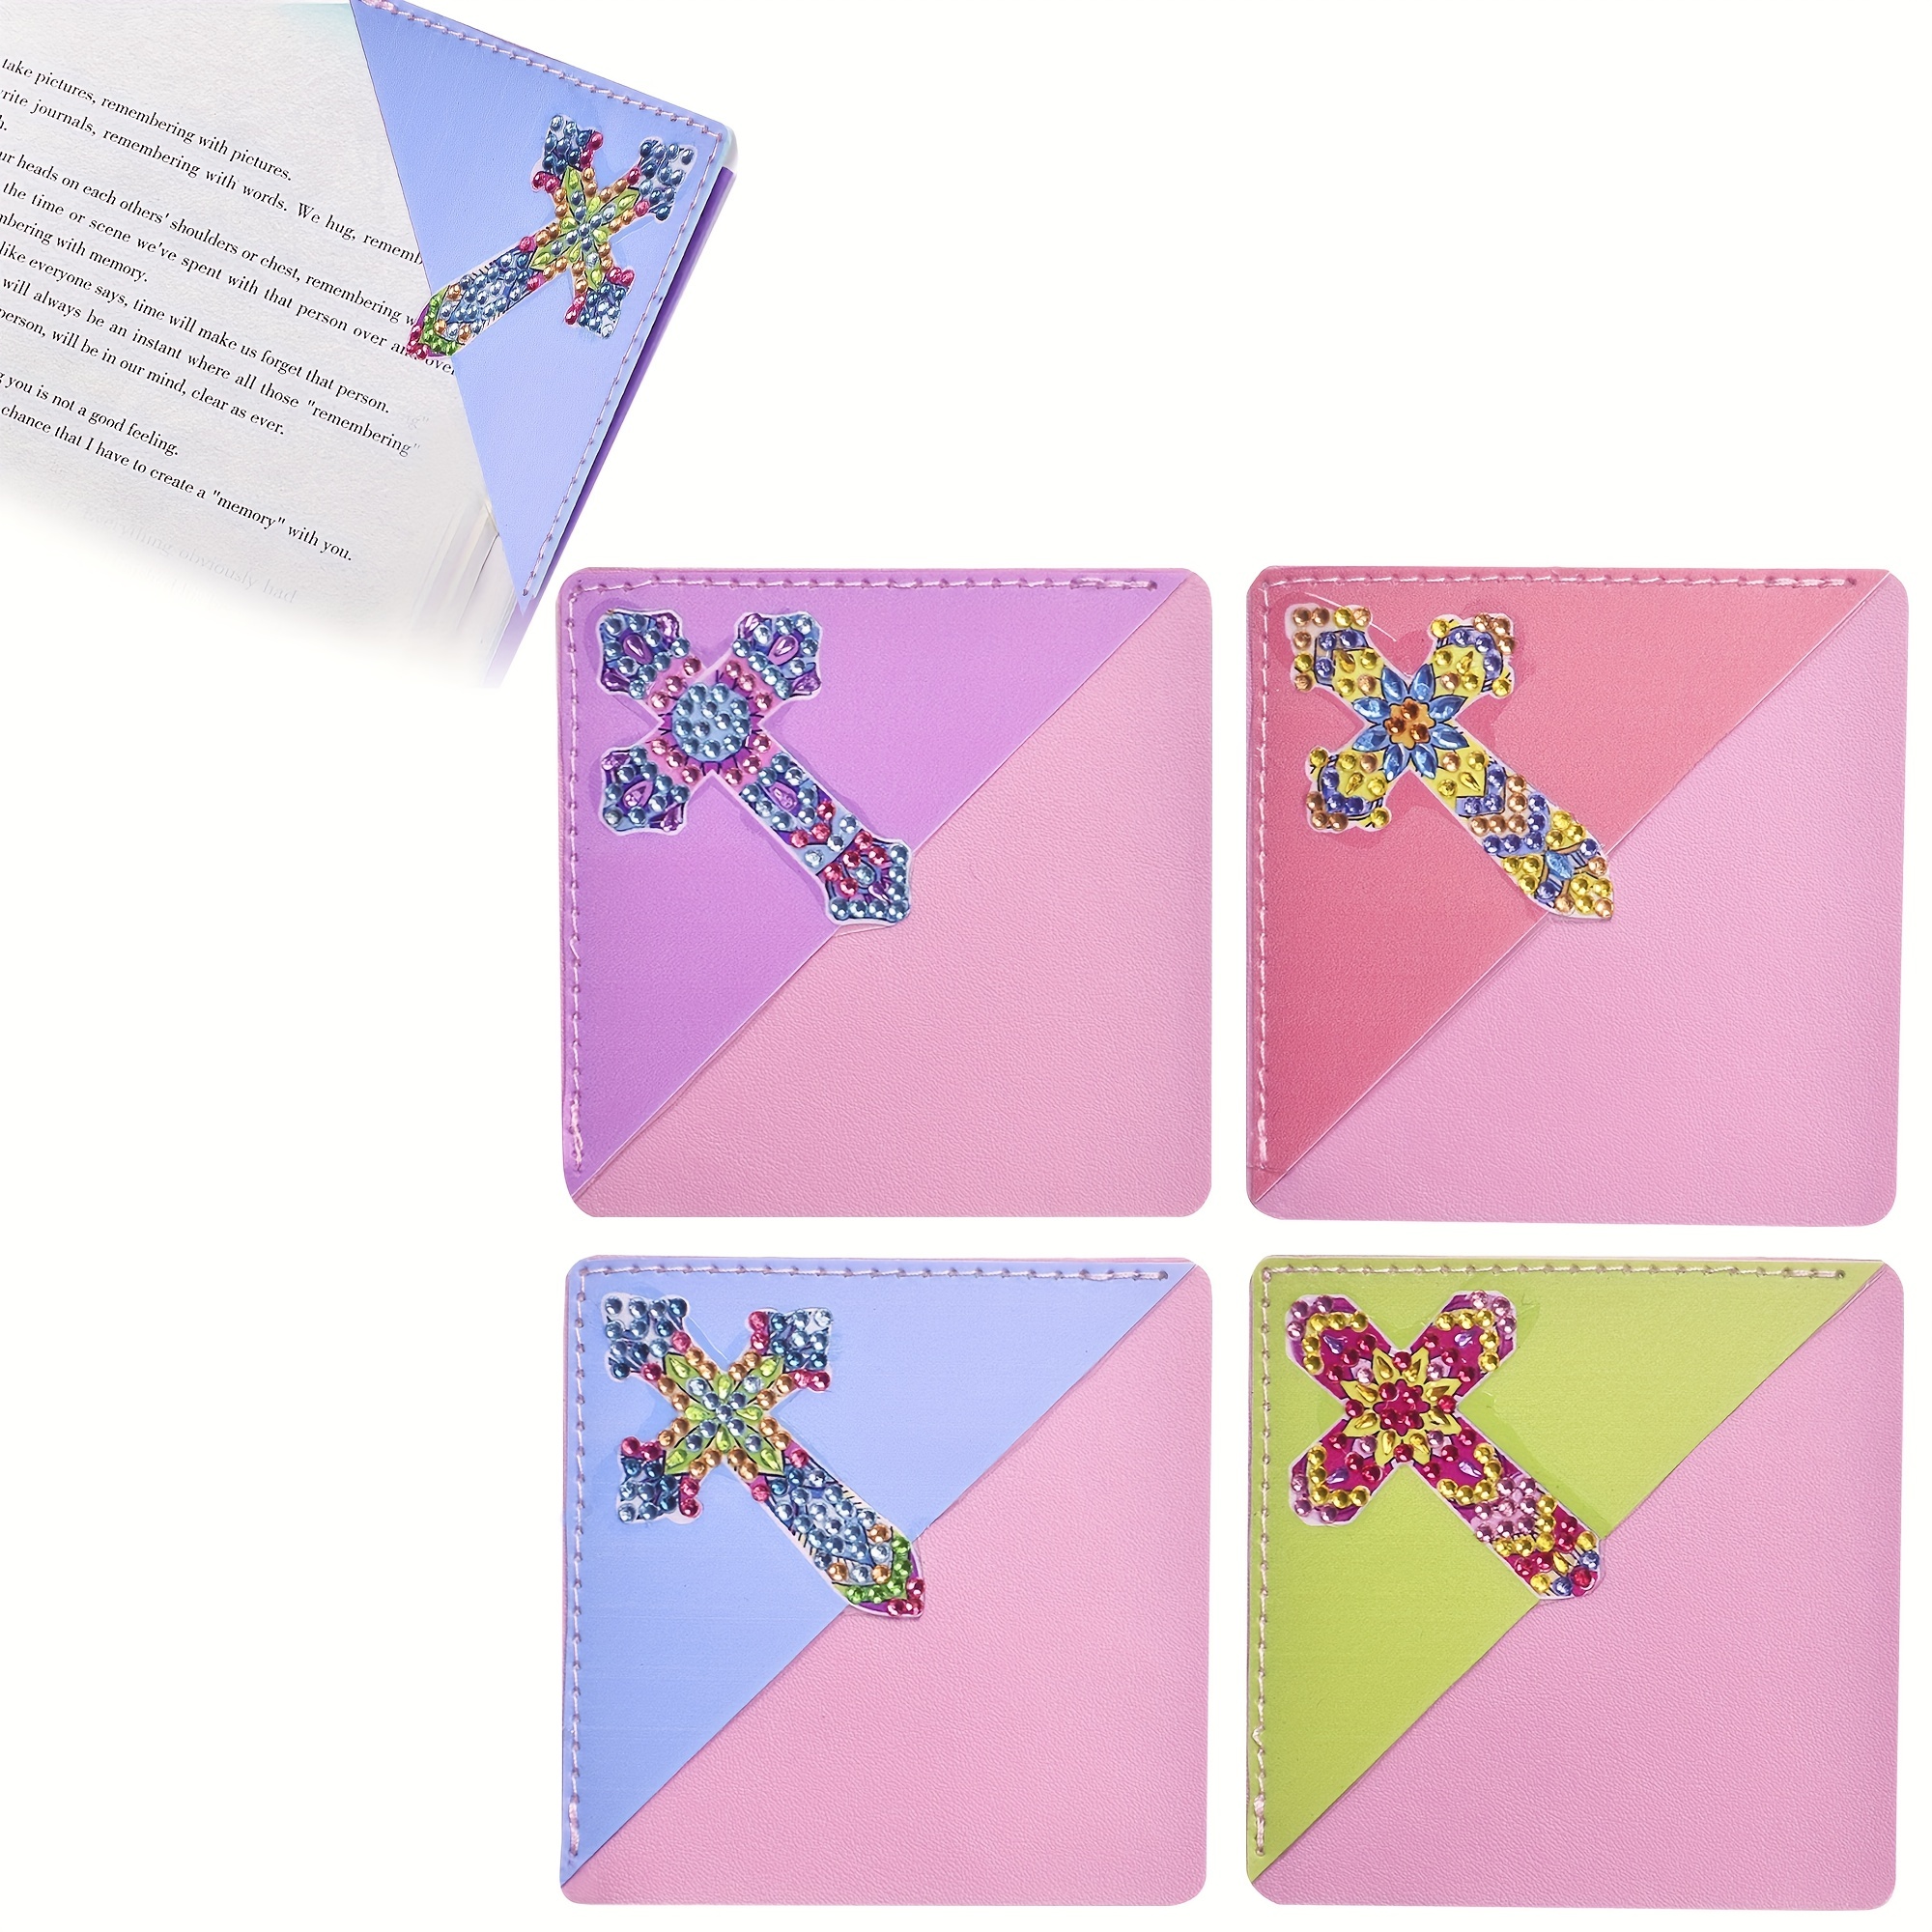 Purple Flower Bookmark Diamond Painting Kit - pigpigboss 2 Pieces 5D DIY Diamond Painting by Numbers for Adults Flower Bookmark Diamond Painting